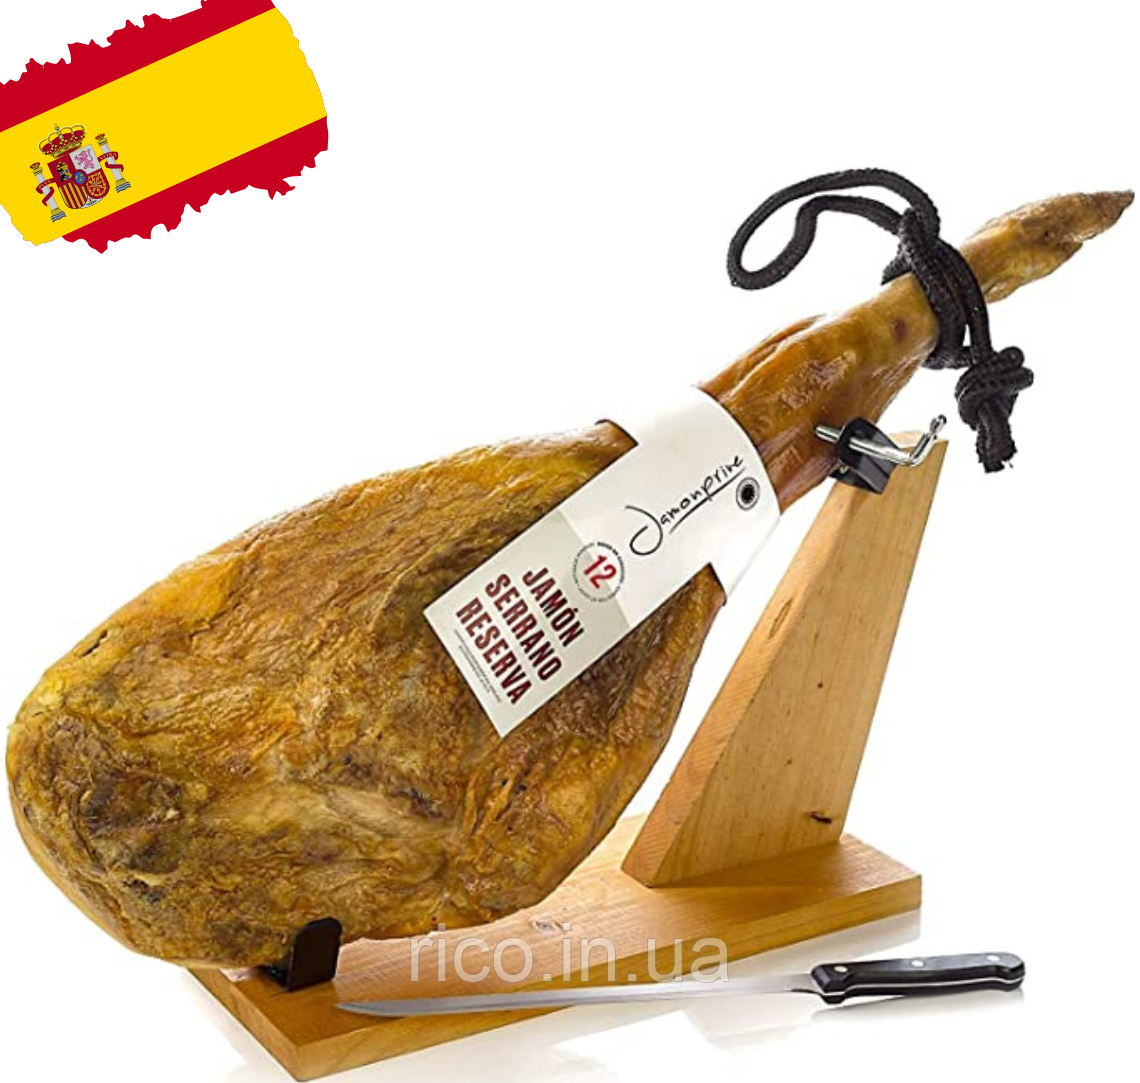 Іспанський хамон із хамонерою Jamon Serrano Jamoprive 6,5-7 кг із ножем у комплекті